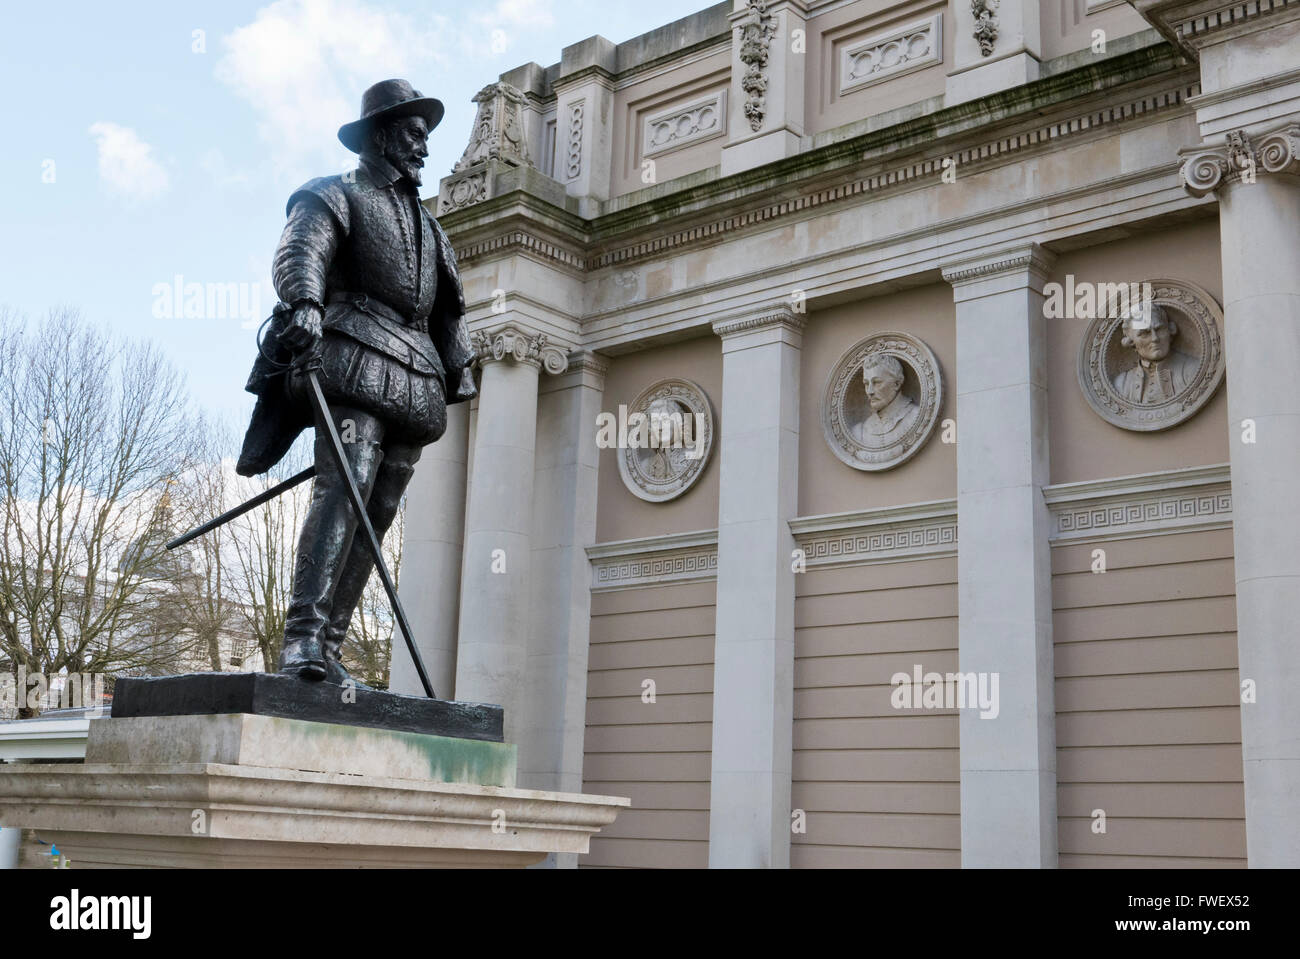 La statue de Sir Walter Raleigh statue à l'extérieur du bâtiment de découvrir Greenwich, Londres, Royaume-Uni. Banque D'Images